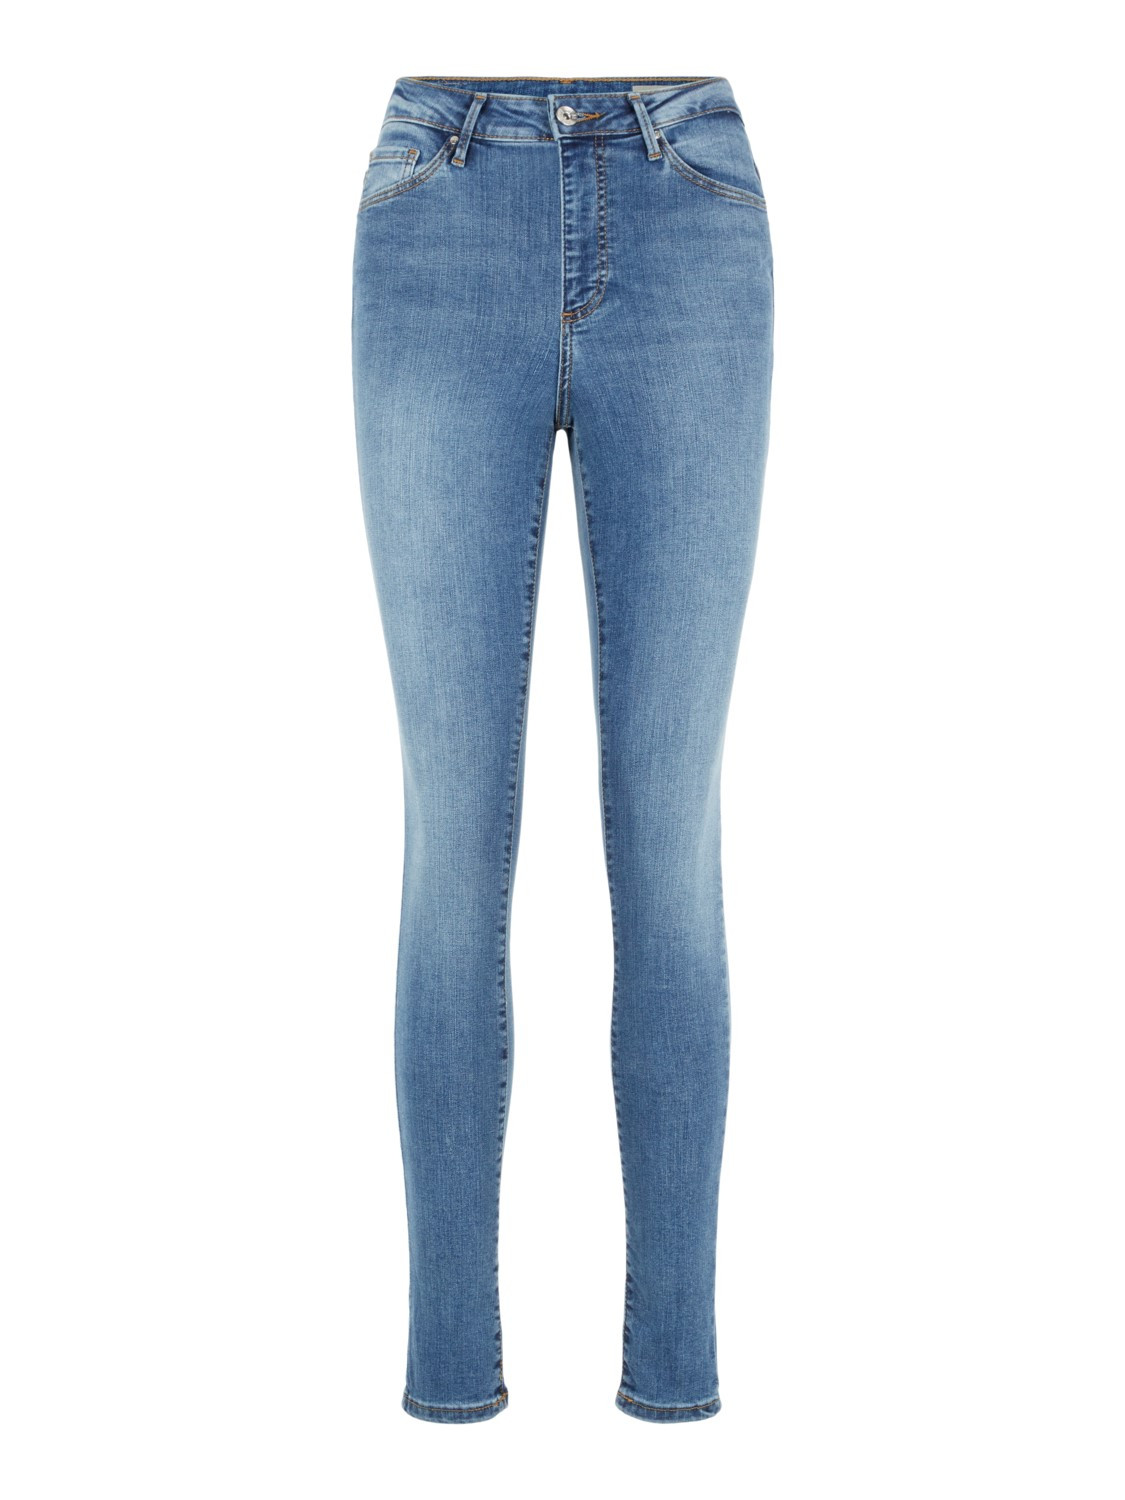 Afbeelding van Vero Moda Vmsophia hw skinny jeans lt bl noos